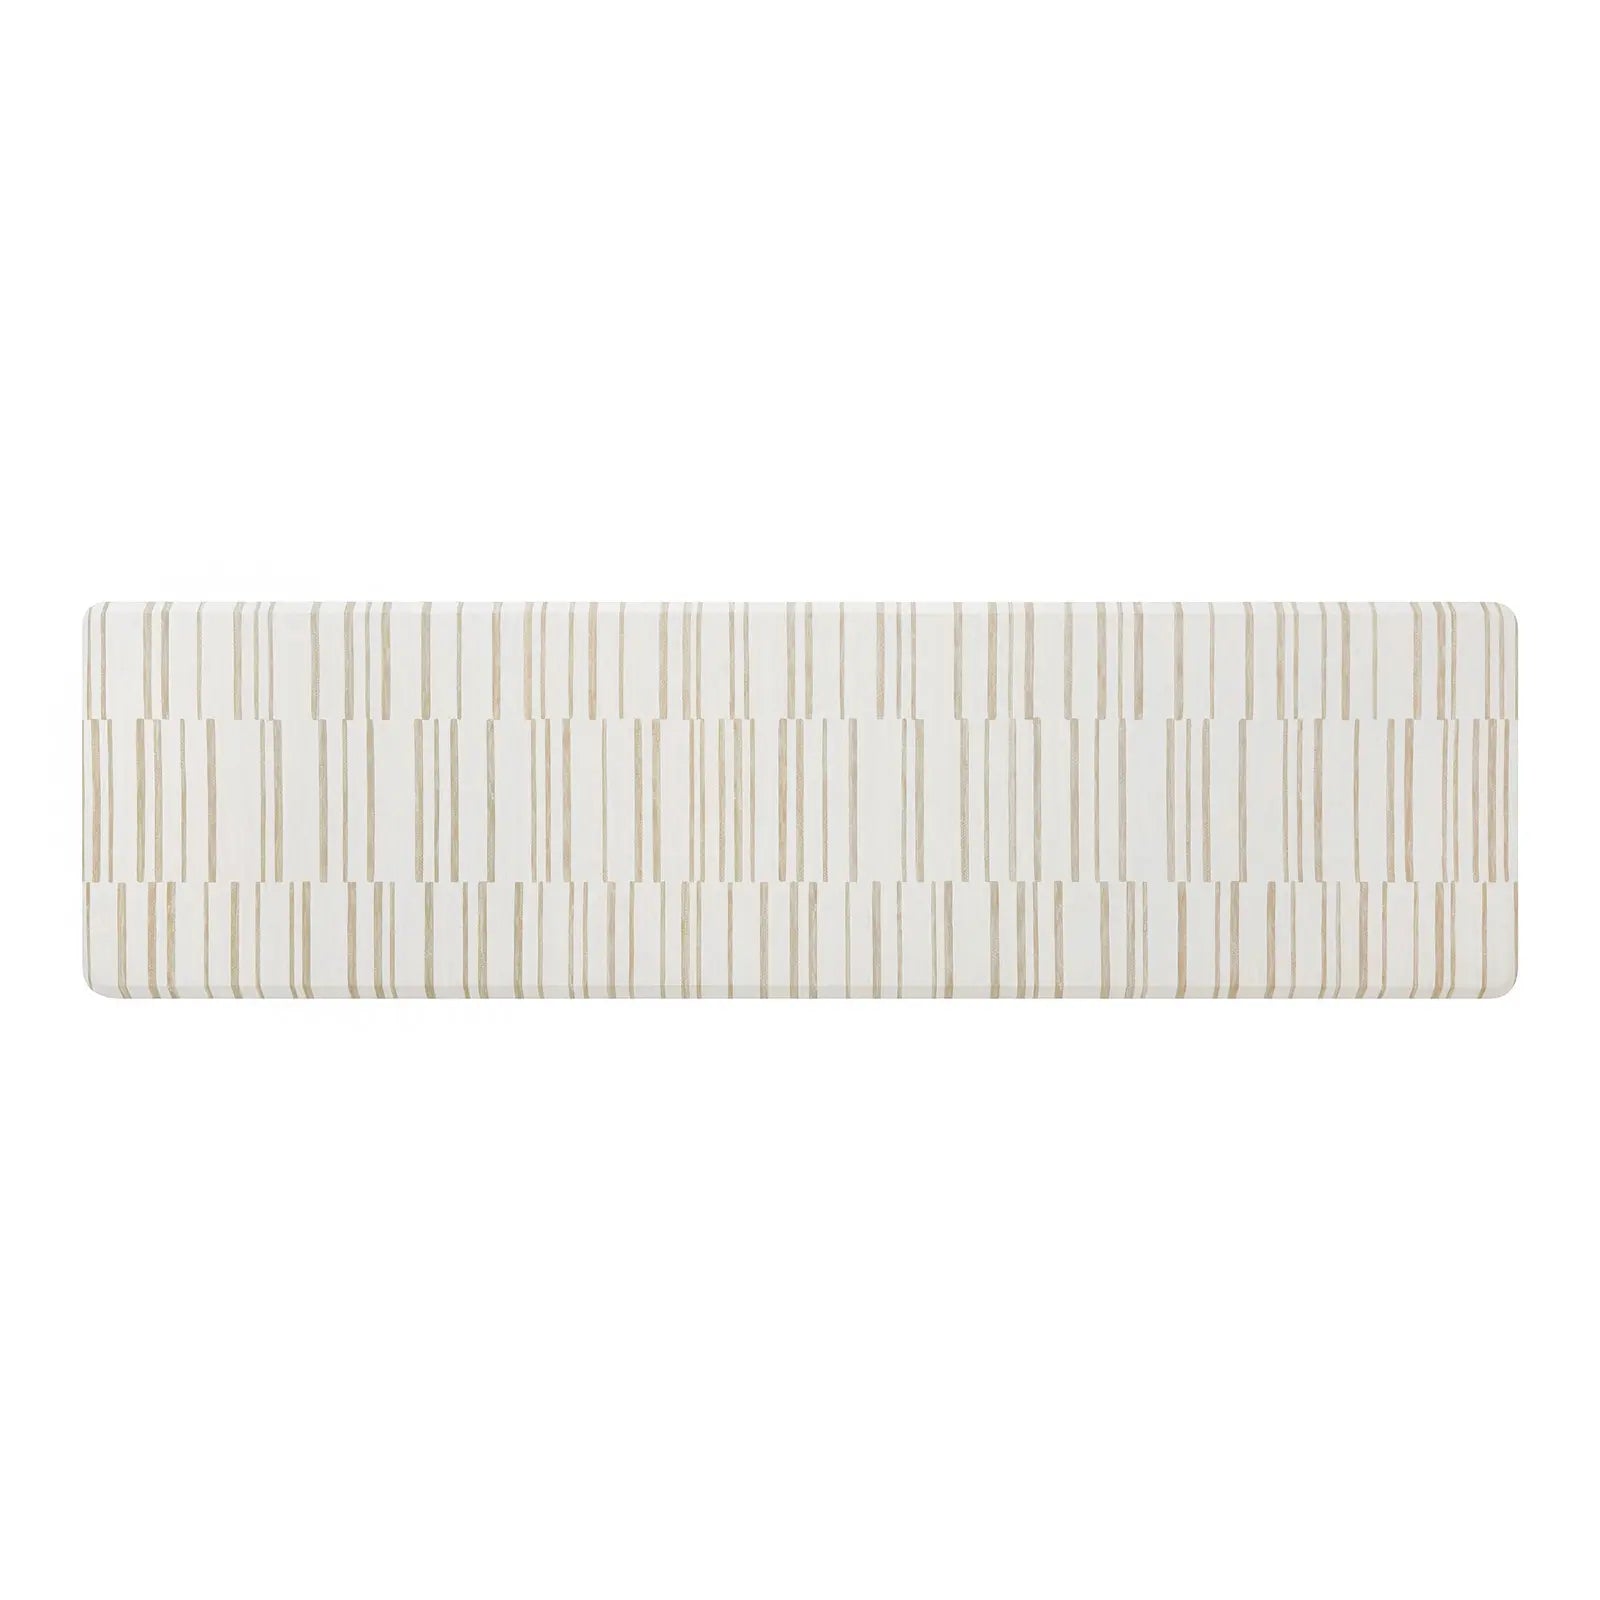 Beige inverted stripe kitchen mat shown in size 30x108